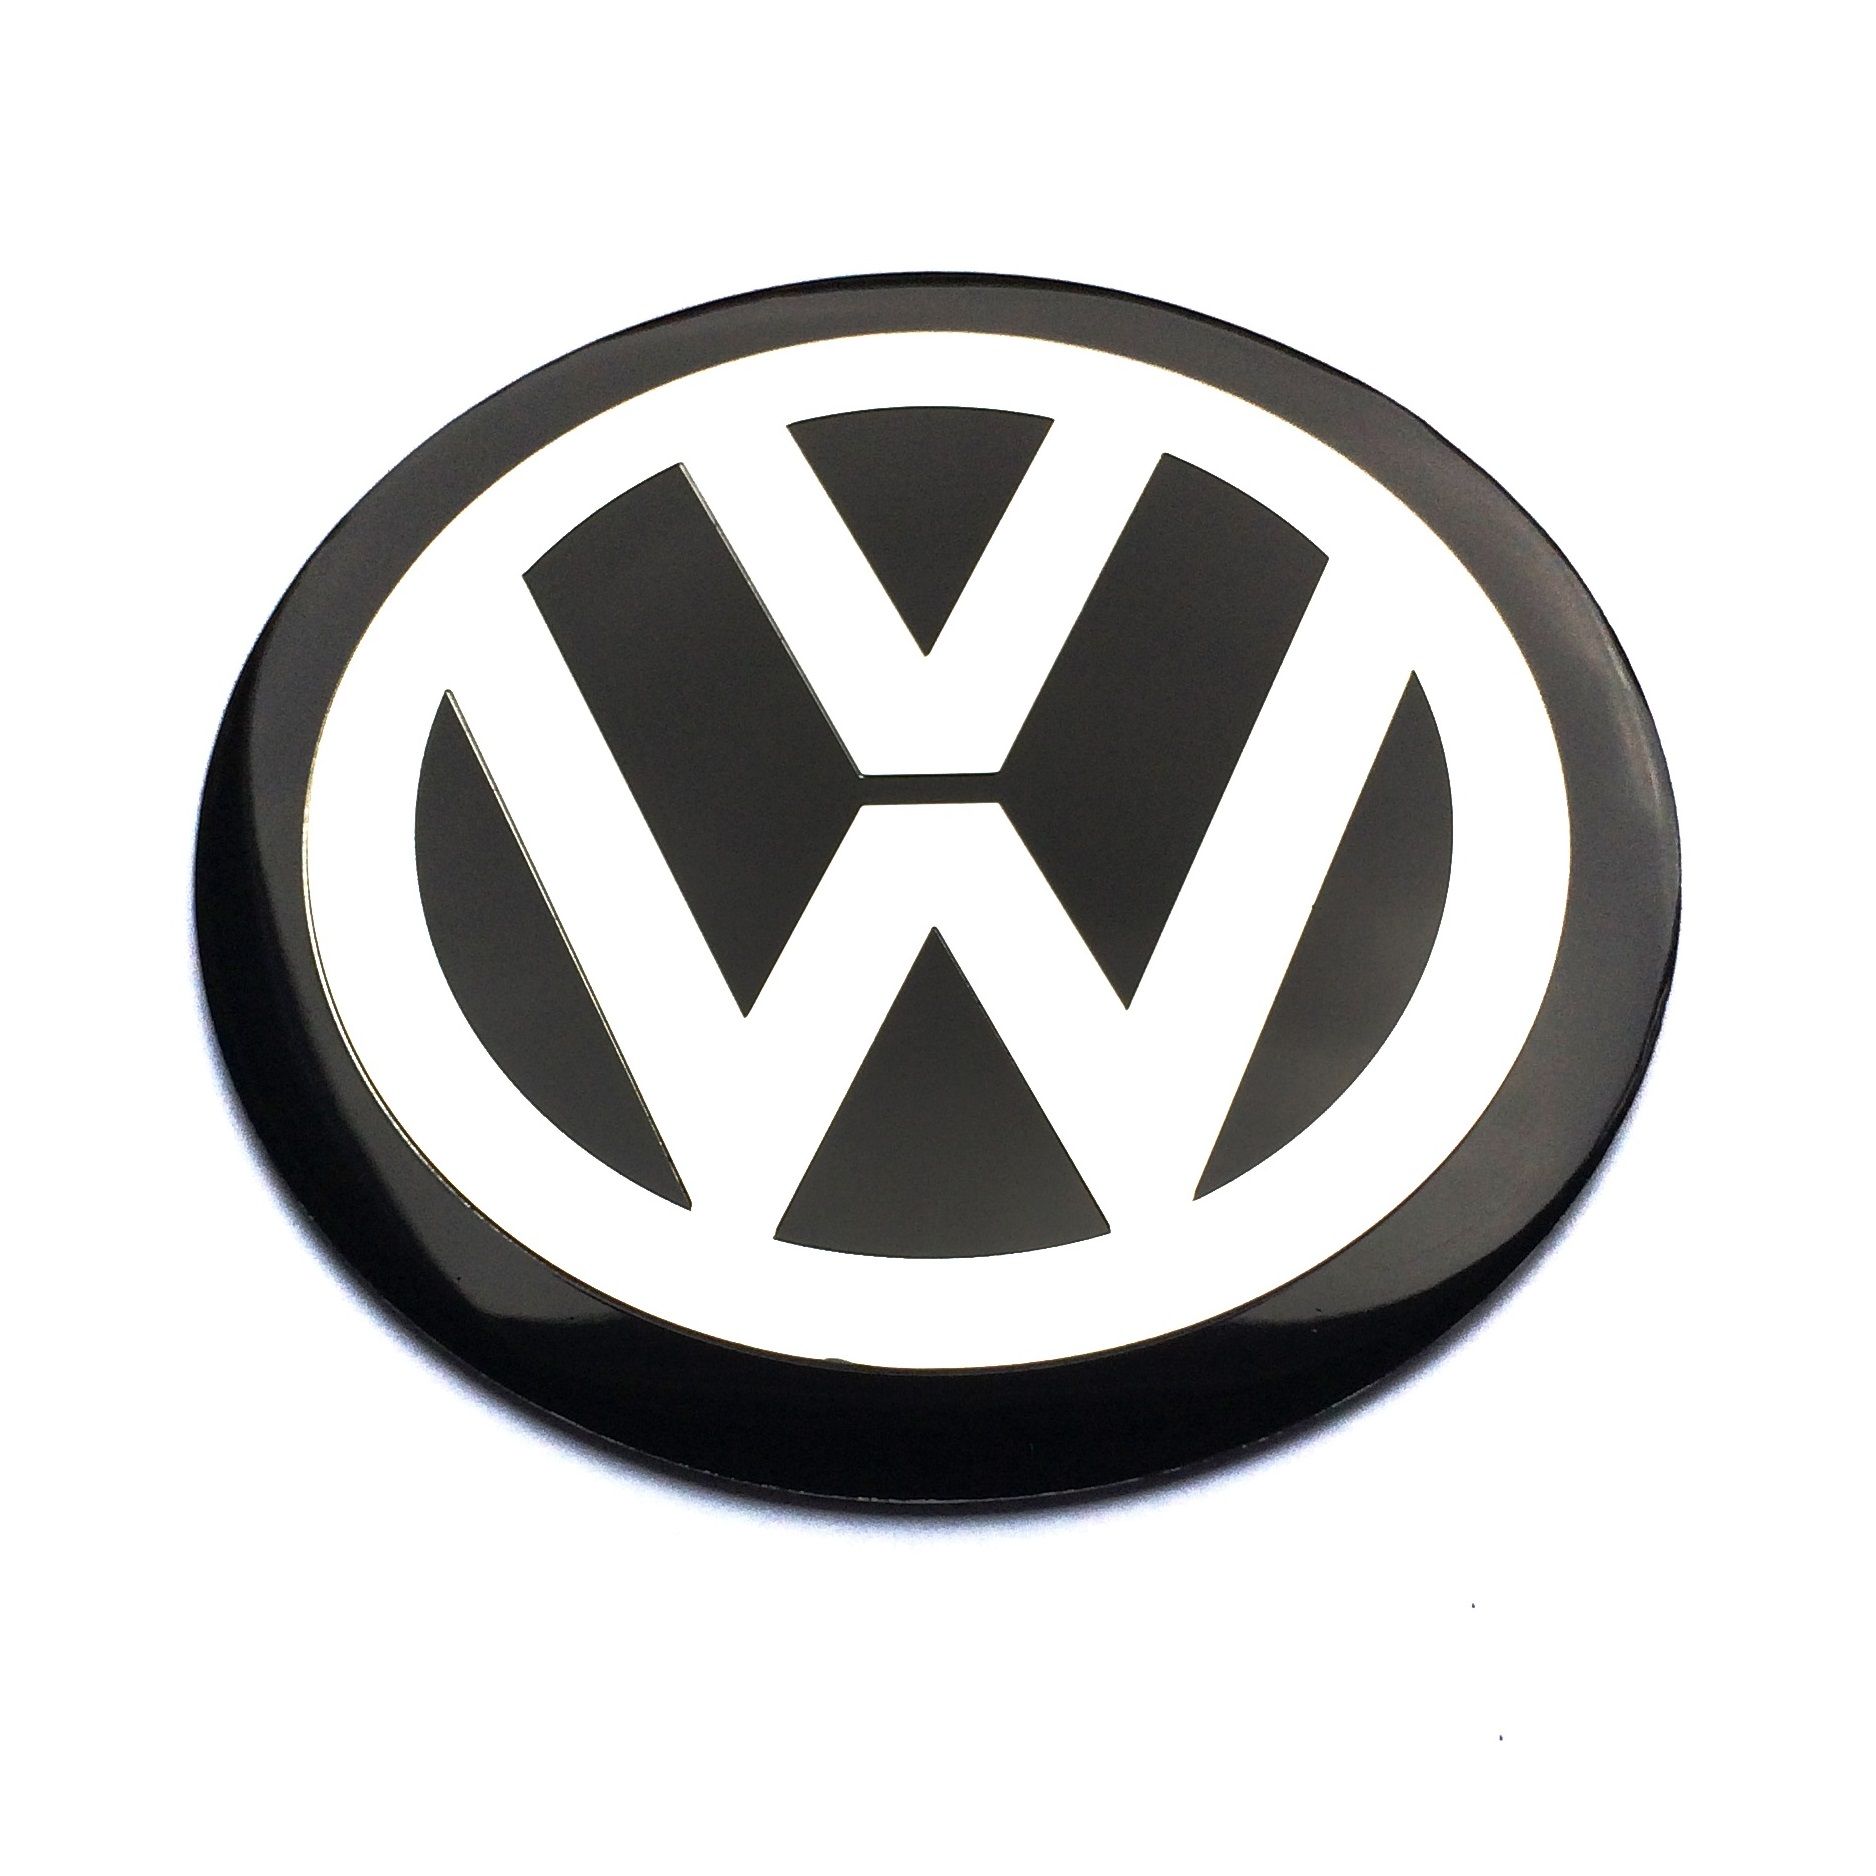 https://www.tuninglinie.de/300/4-stueck-x-120mm-vw-metall-aufkleber-volkswagen-felgen-logo-radkappen-embleme.jpg